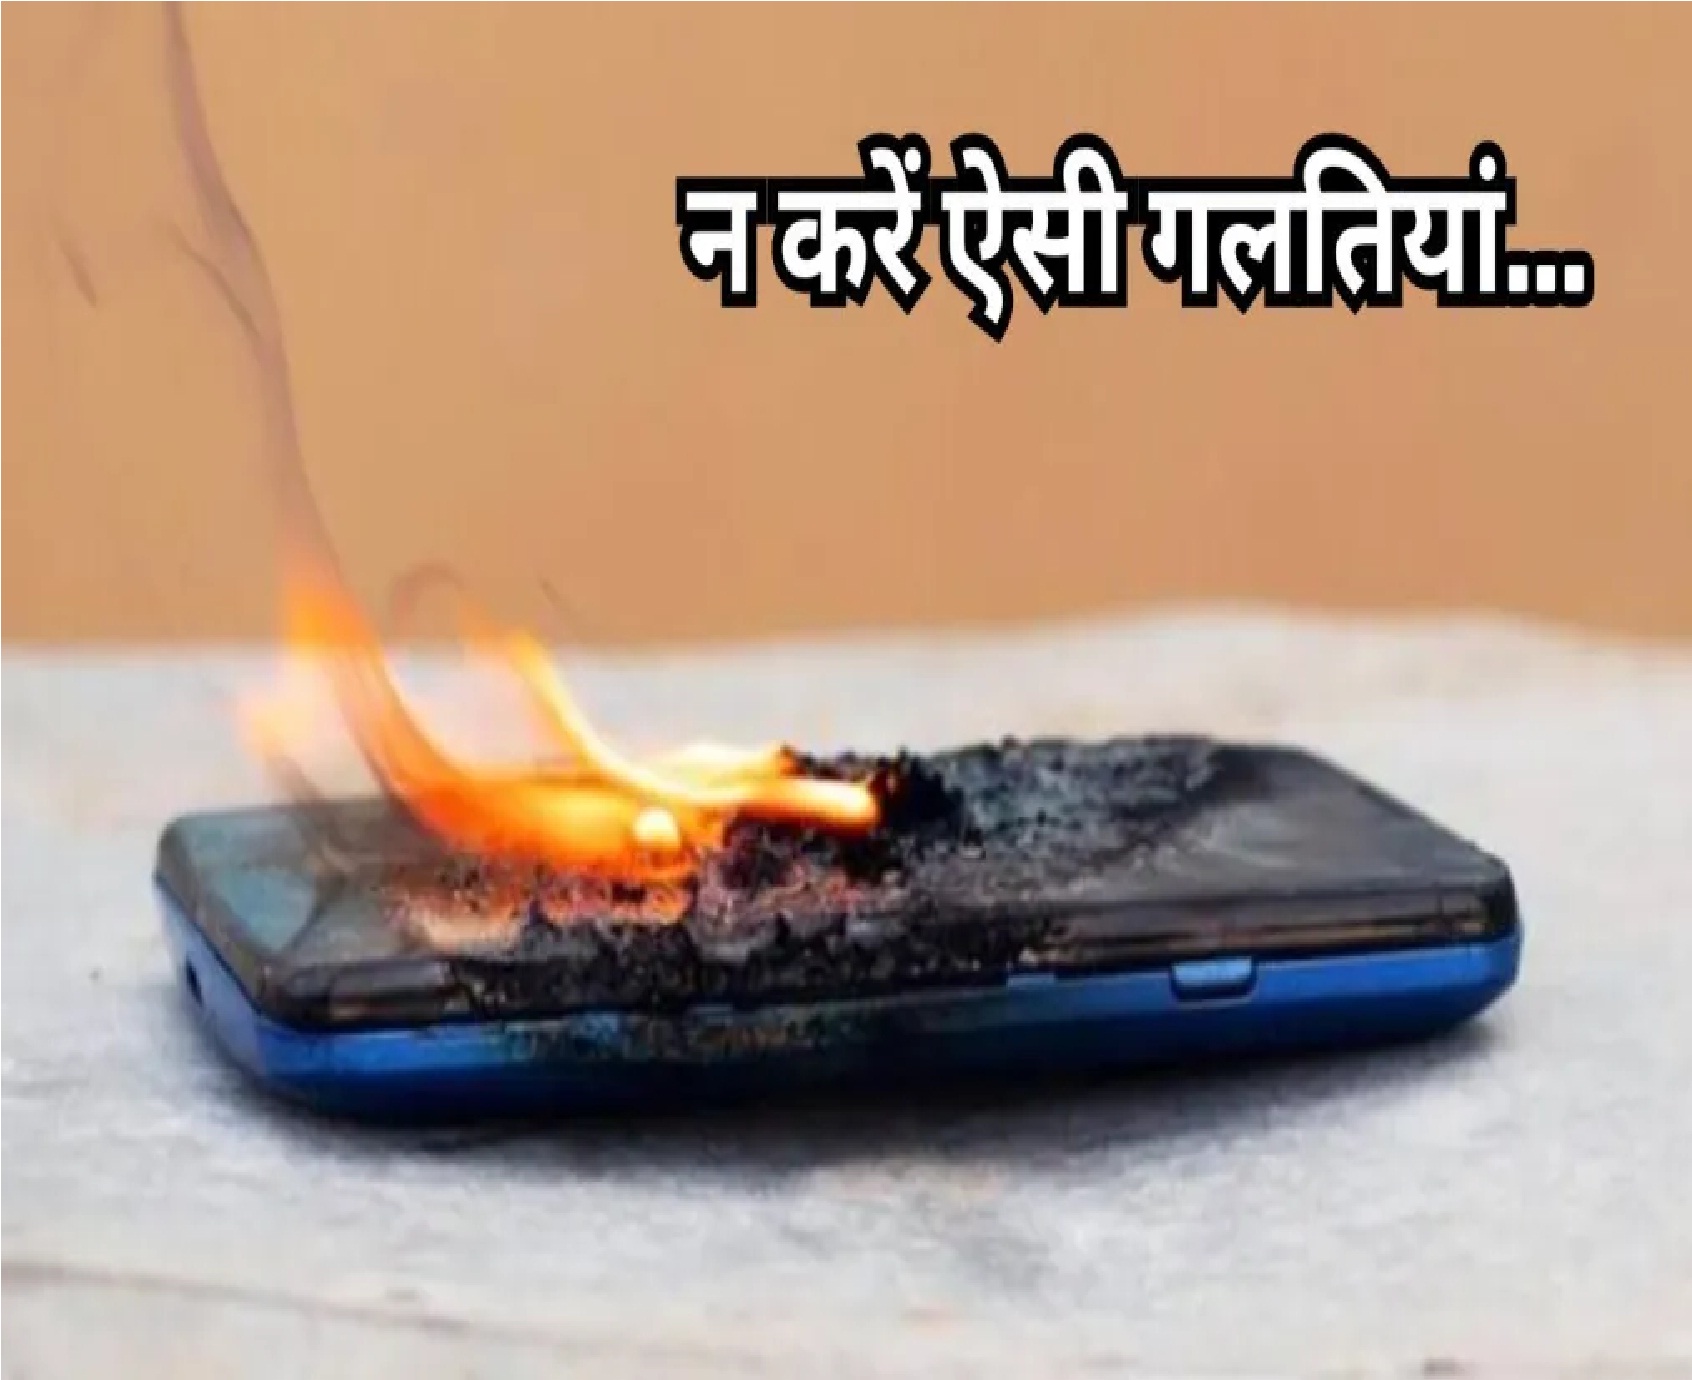 New Delhi: फोन चार्ज करते वक्त भूलकर भी न करें ये 5 गलतियां, हो सकता है बड़ा हादसा